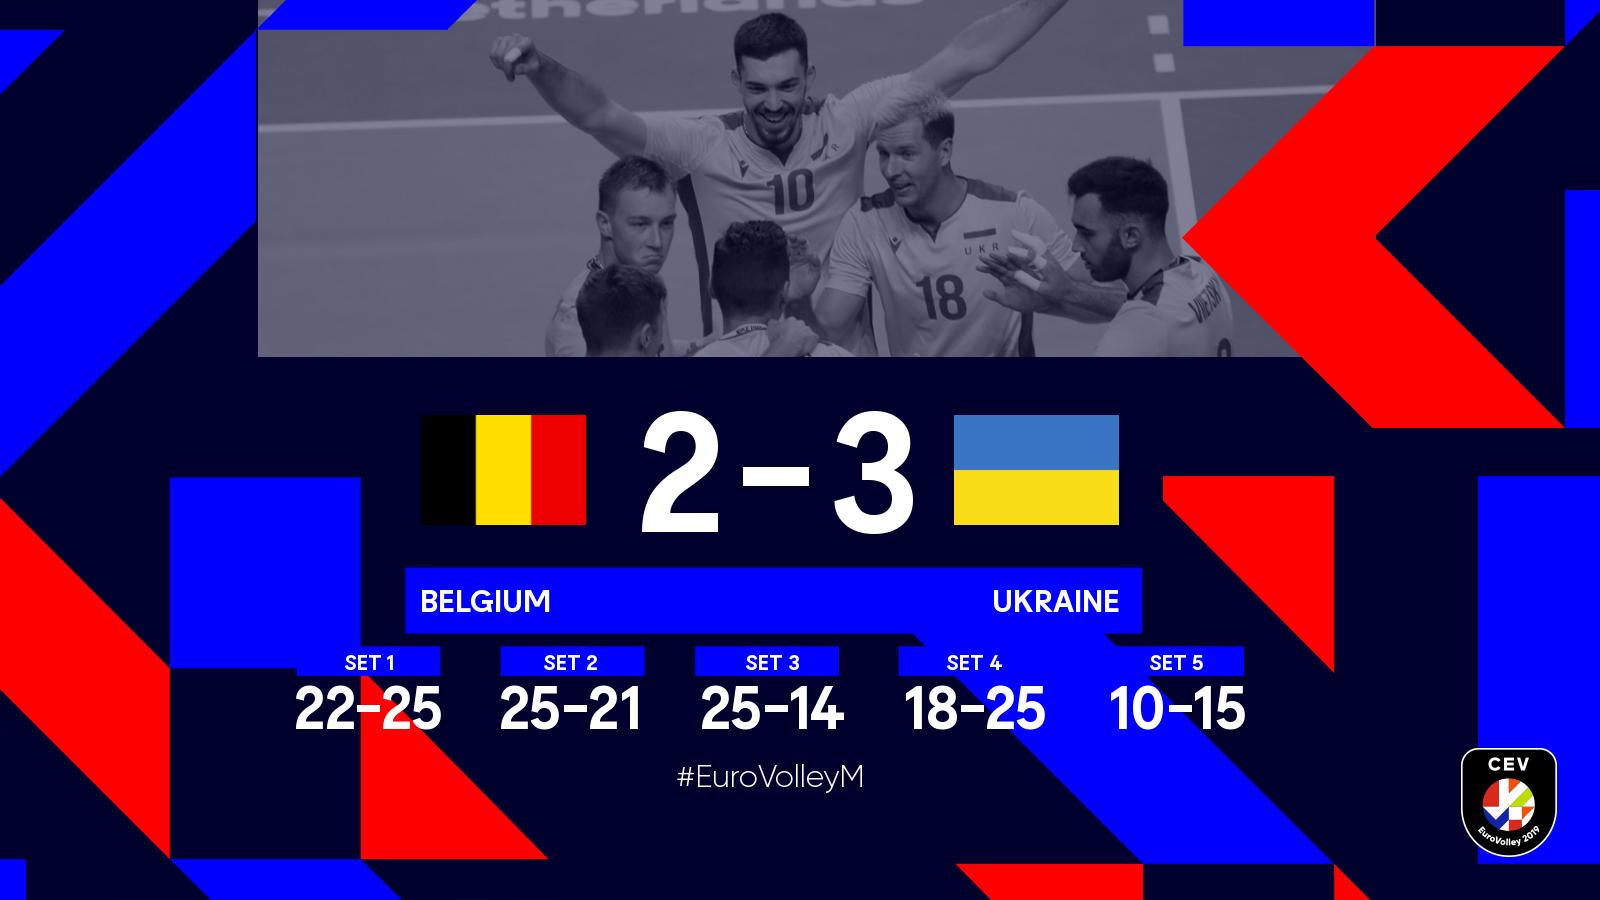 Тренер сборной Бельгии: Украина — жесткая команда, нам следует показать лучшее в игре